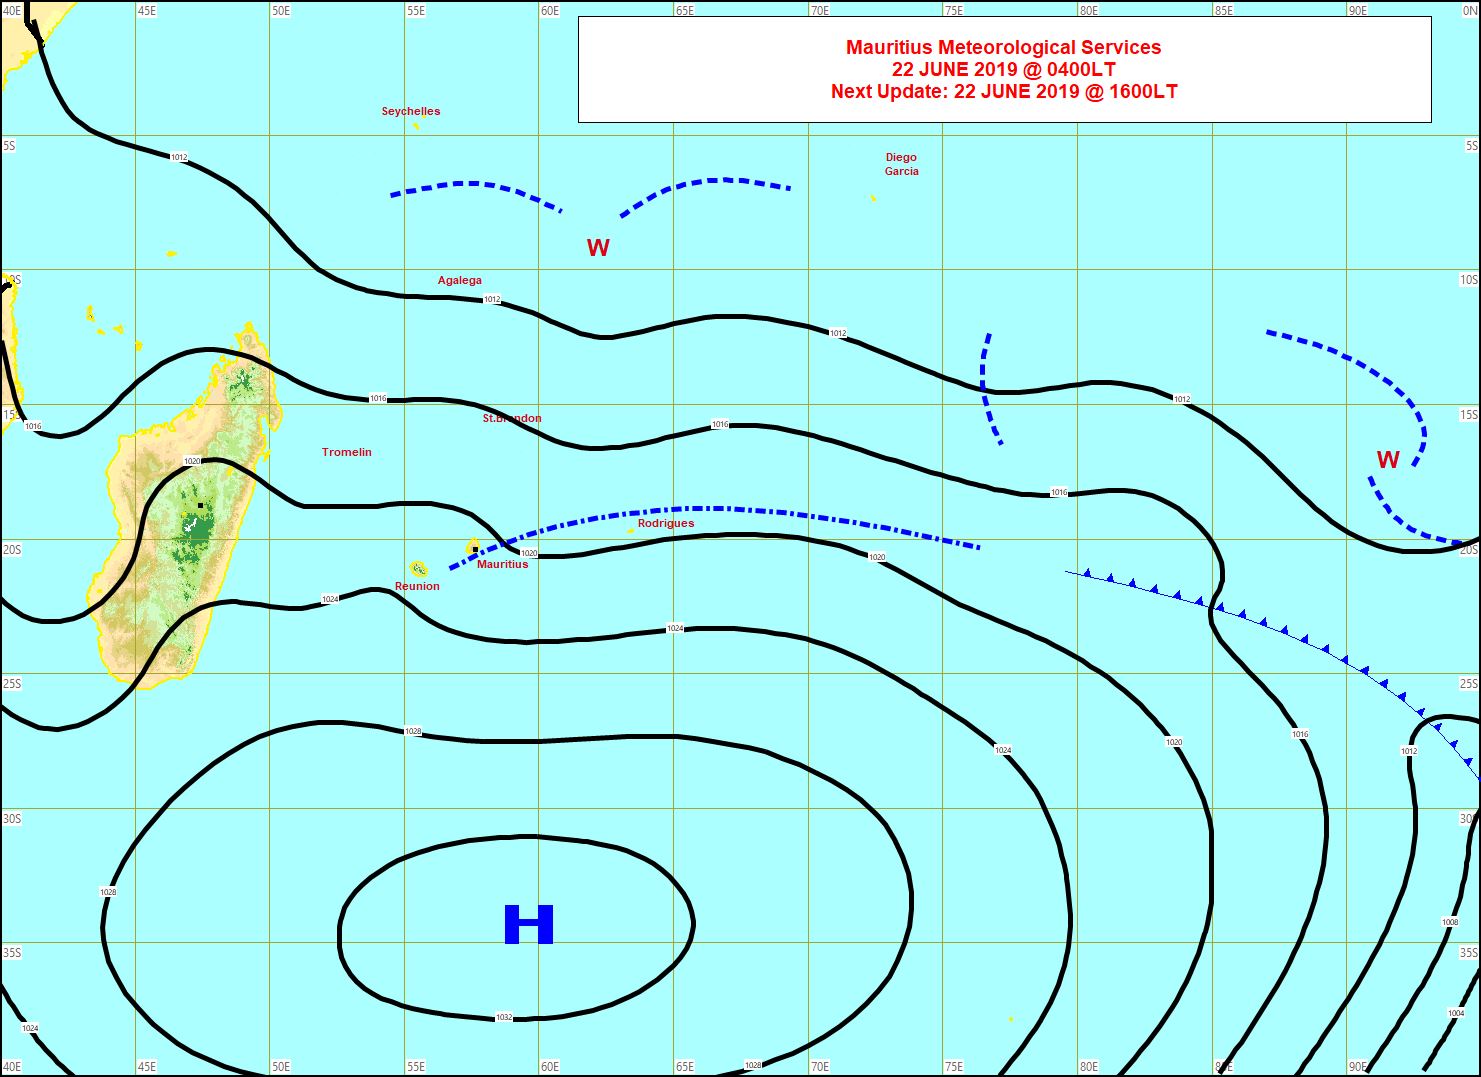 Analyse de la situation de surface ce matin. L'anticyclone(H) dirige toujours un alizé assez soutenu sur notre zone mais il commence à s'affaiblir. MMS